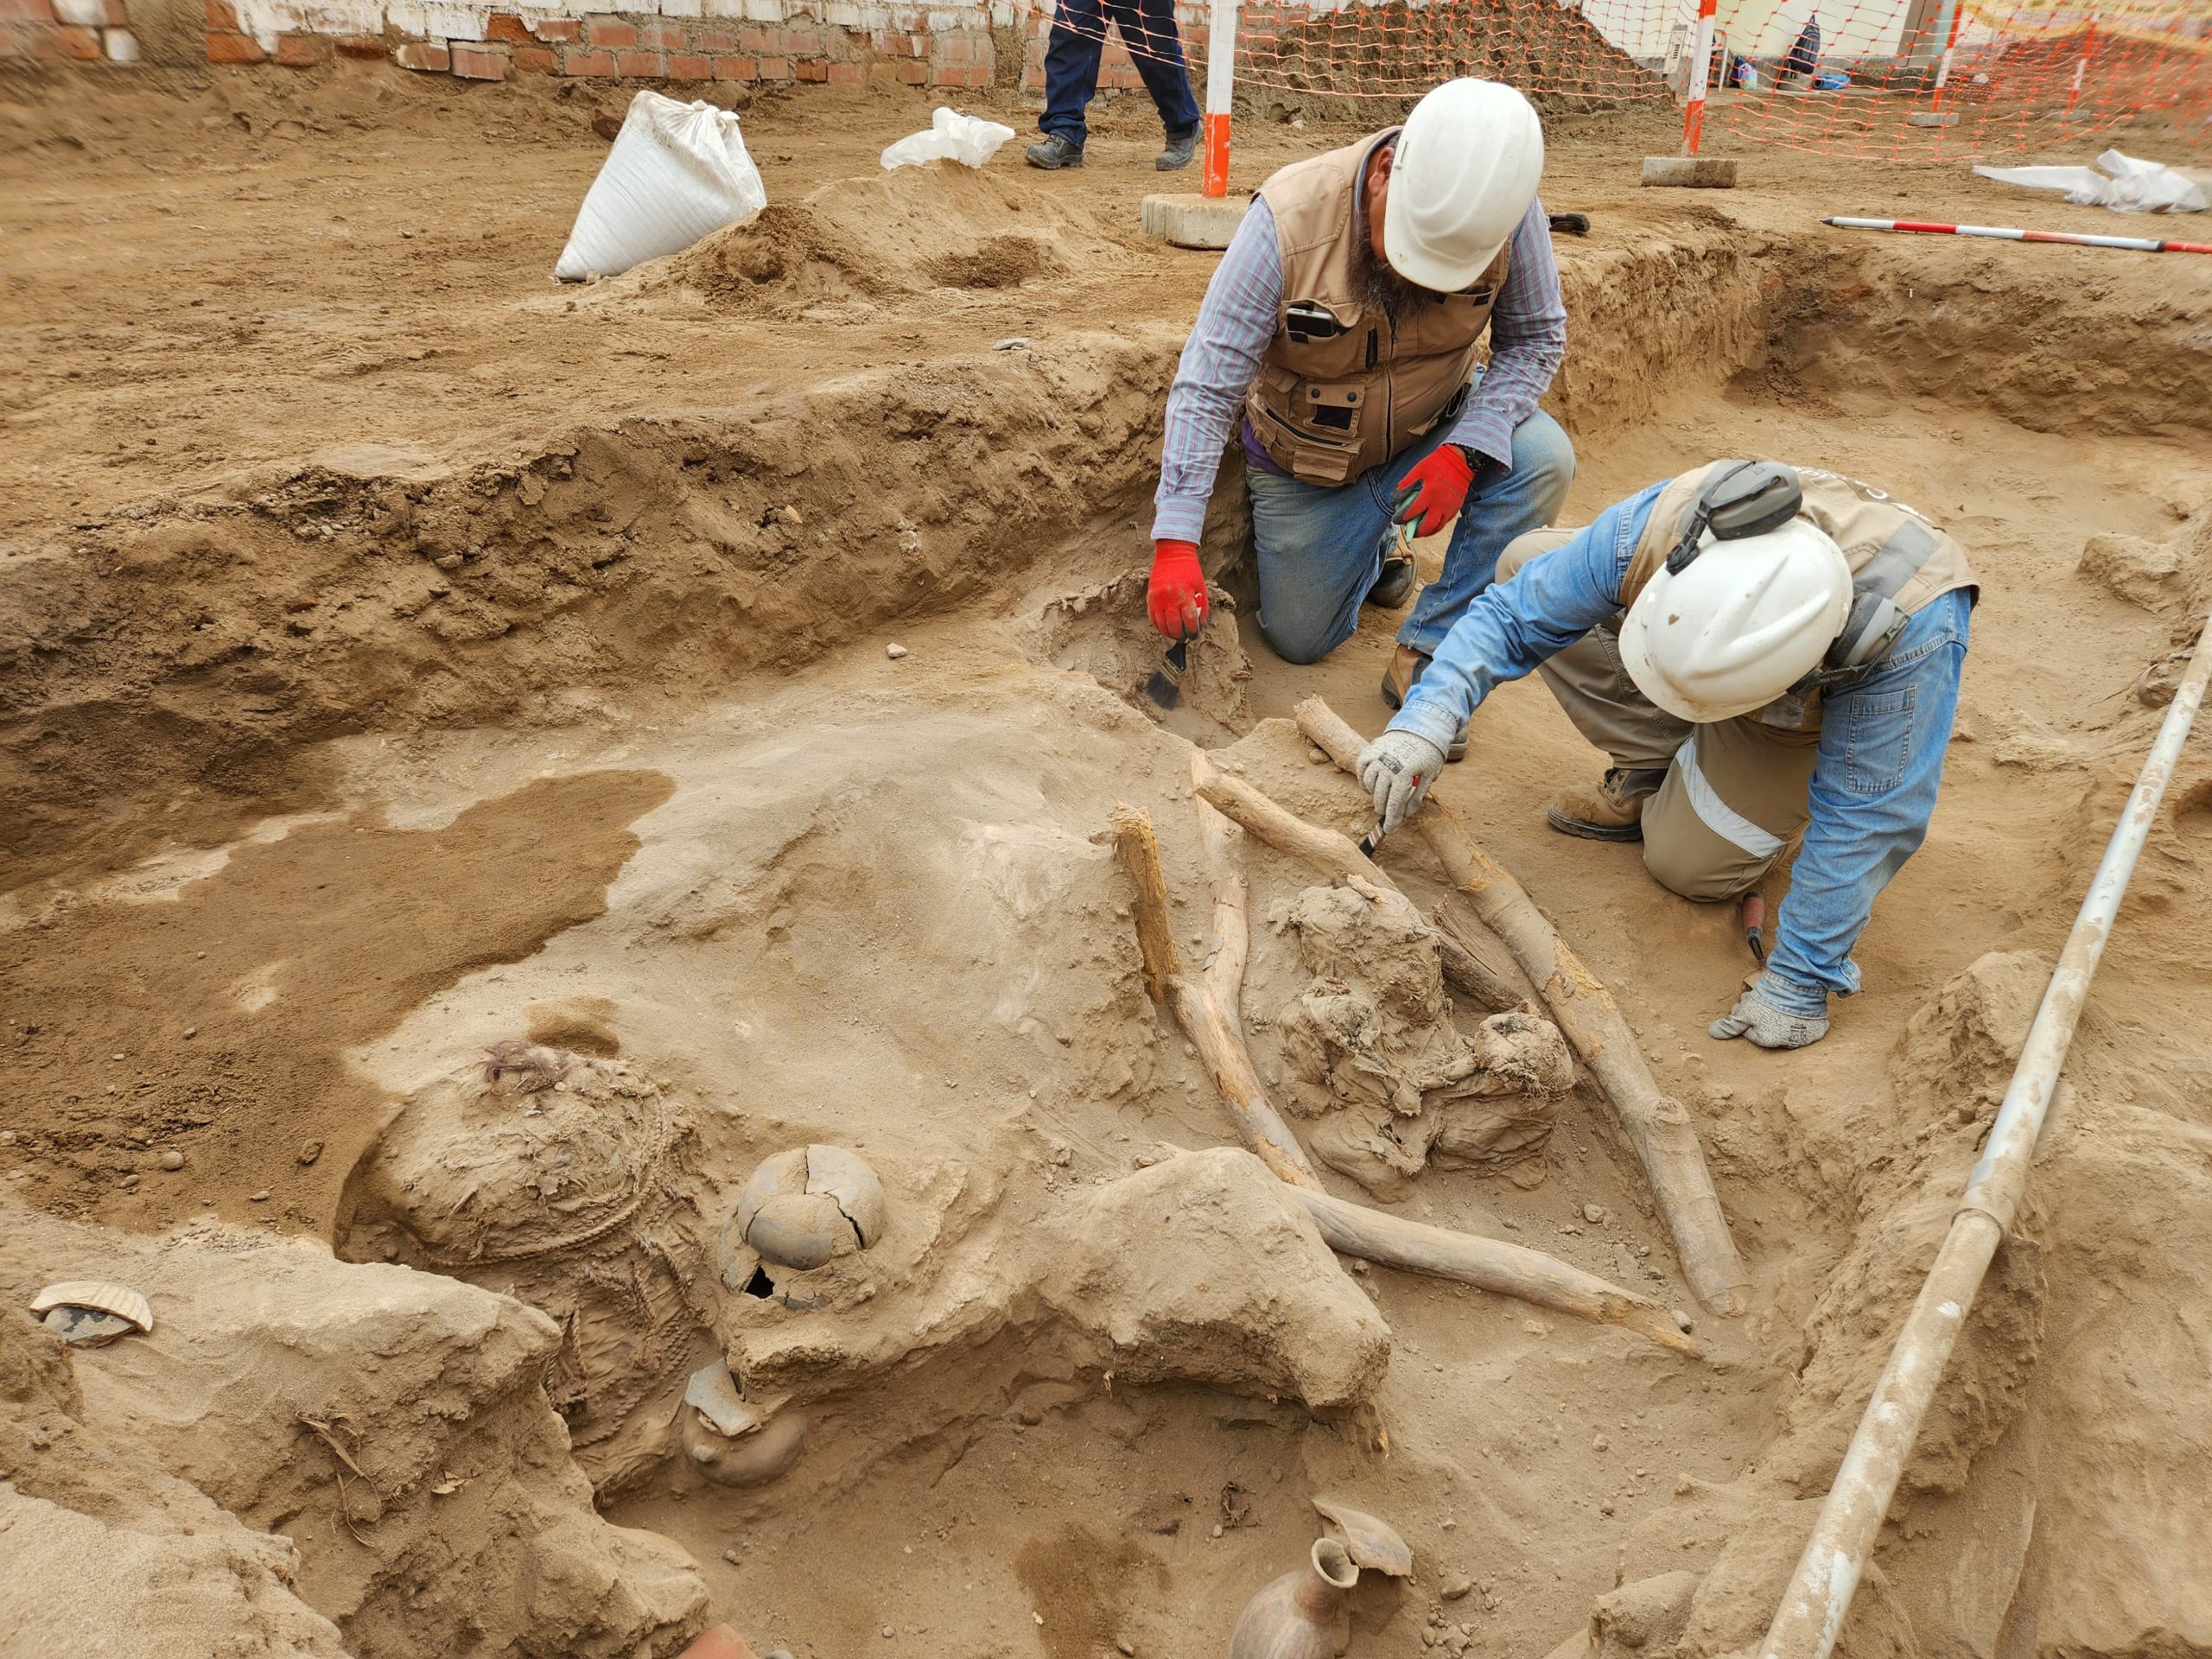 Descubrimos cementerio milenario de la cultura Chancay en Carabayllo